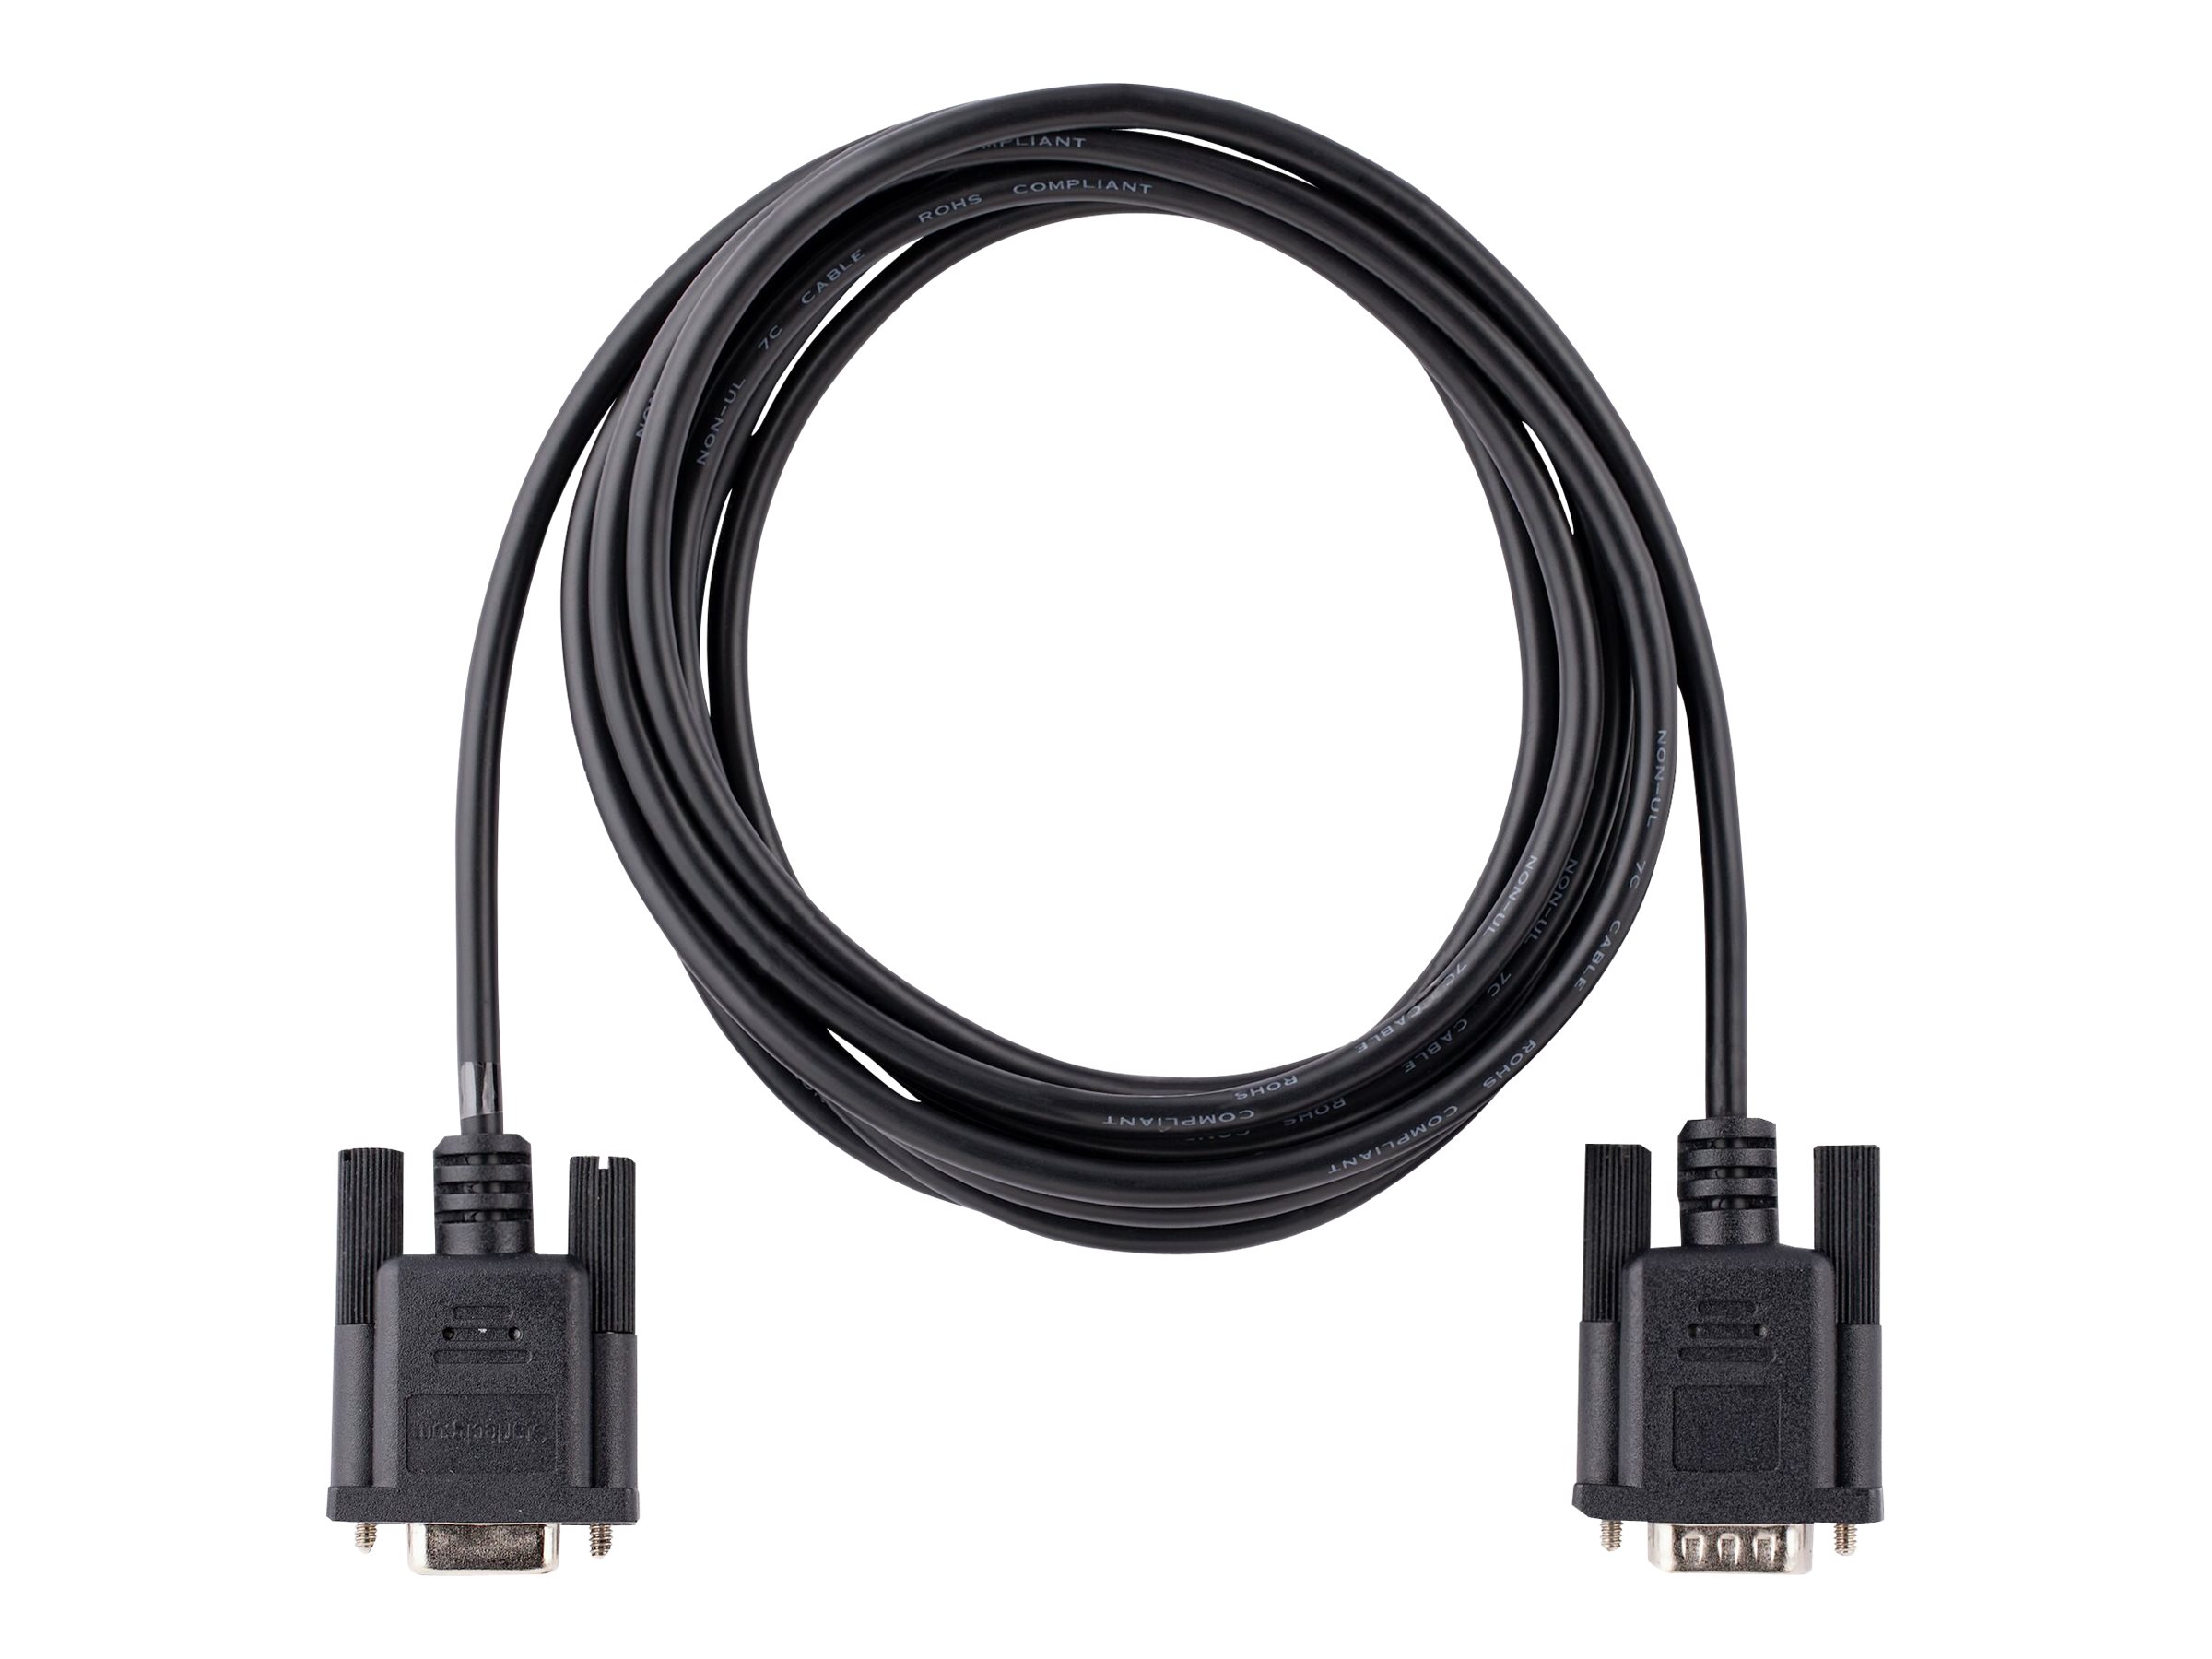 StarTech.com 3m RS232 Serial Null Modem Cable, Crossover Serial Cable w/Al-Mylar Shielding, DB9 Serial COM Port Cable Female to Male, Compatible w/DTE Devices - Tool-Less Design w/Thumbscrews, Black, F/M (9FMNM-3M-RS232-CABLE) - Câble de modem nul - DB-9 (F) pour DB-9 (M) - 3 m - moulé, vis moletées, franchissement - noir - 9FMNM-3M-RS232-CABLE - Câbles série